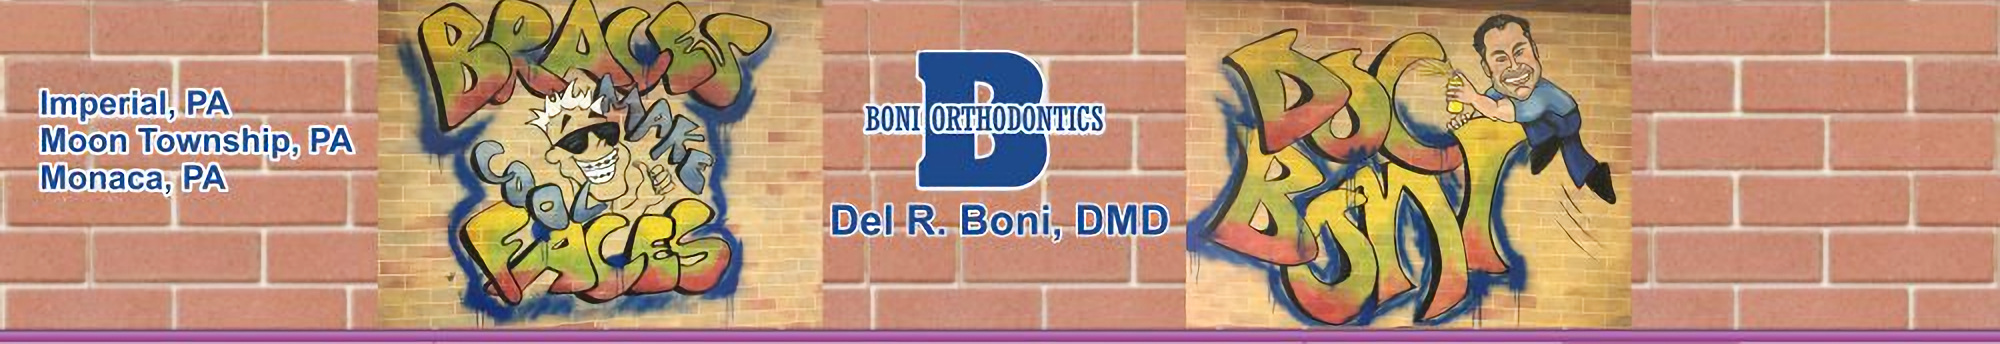 Boni Orthodontics, Del R Boni, D.M.D. 